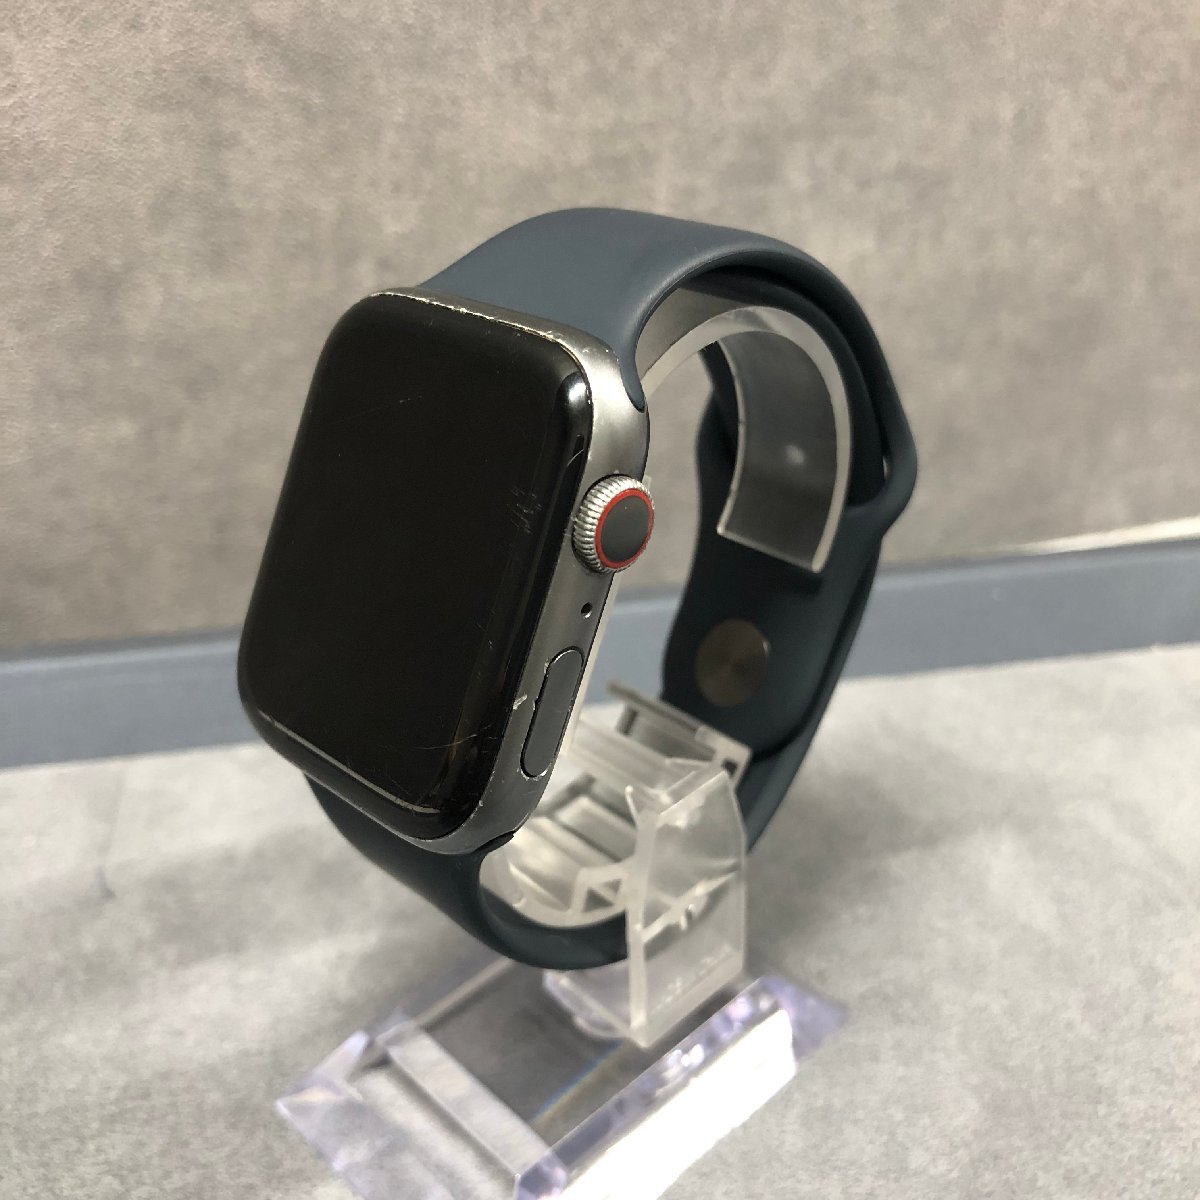 ◎J441【ジャンク】 Apple Watch Series 4 GPS+Cellularモデル MTVU2J/A スペースグレイアルミニウムケース ブラックスポーツバンド付 (rt)